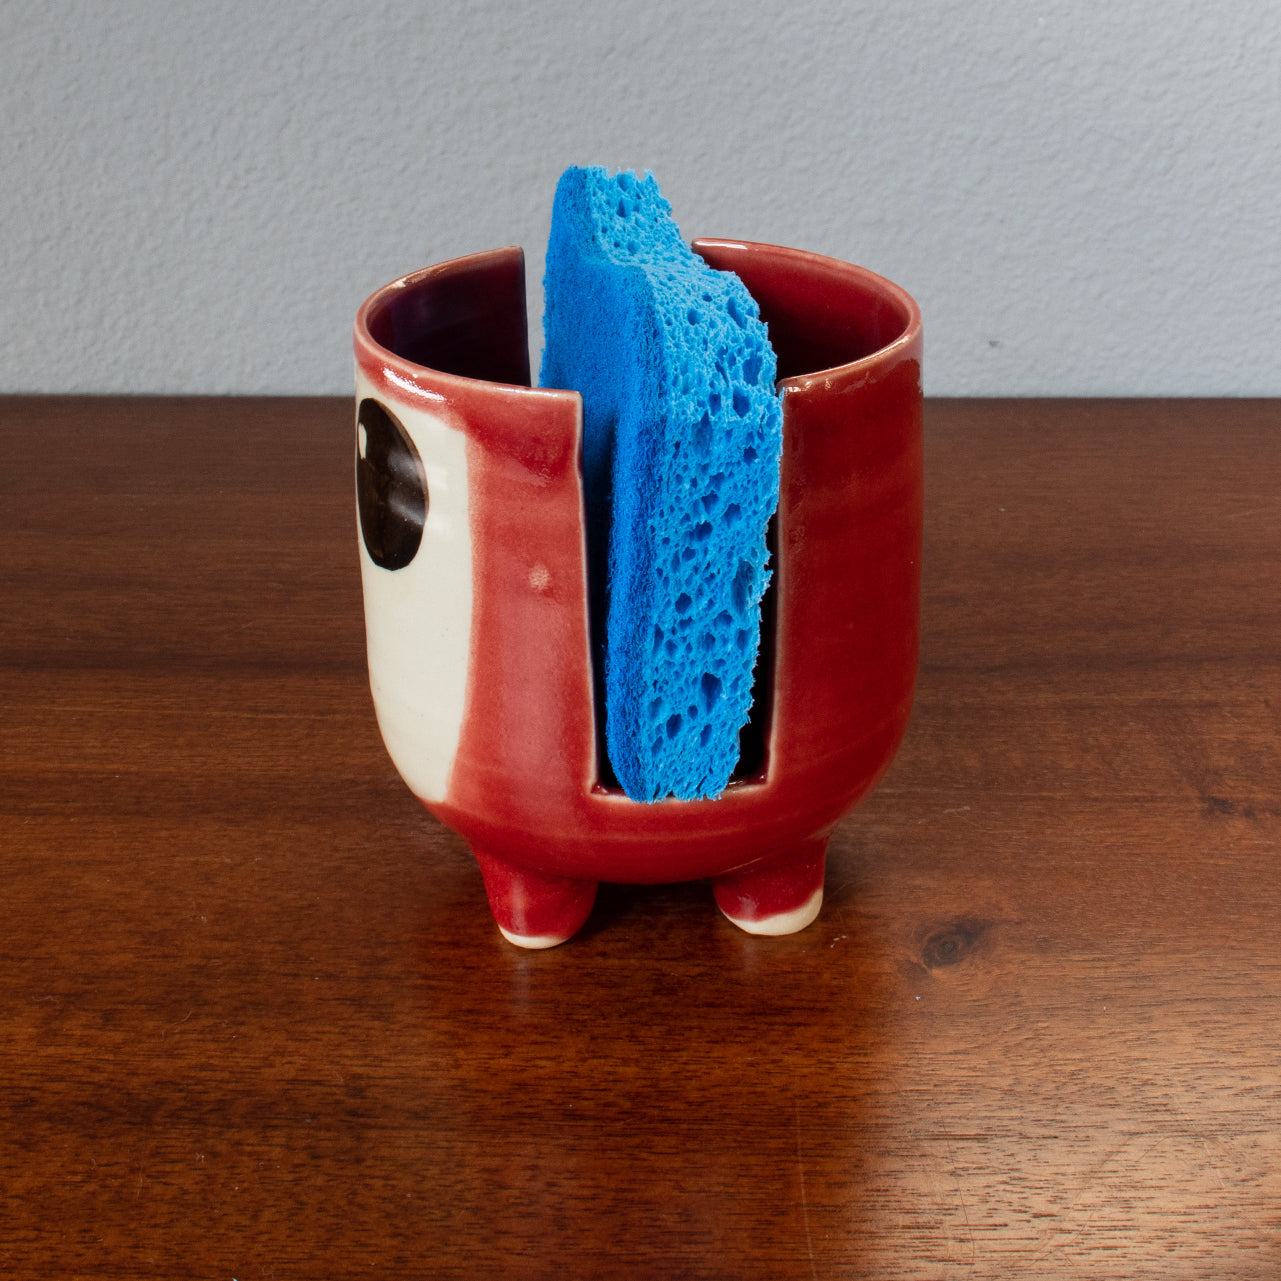 Sponge Holder – 3 Color/Glaze Options